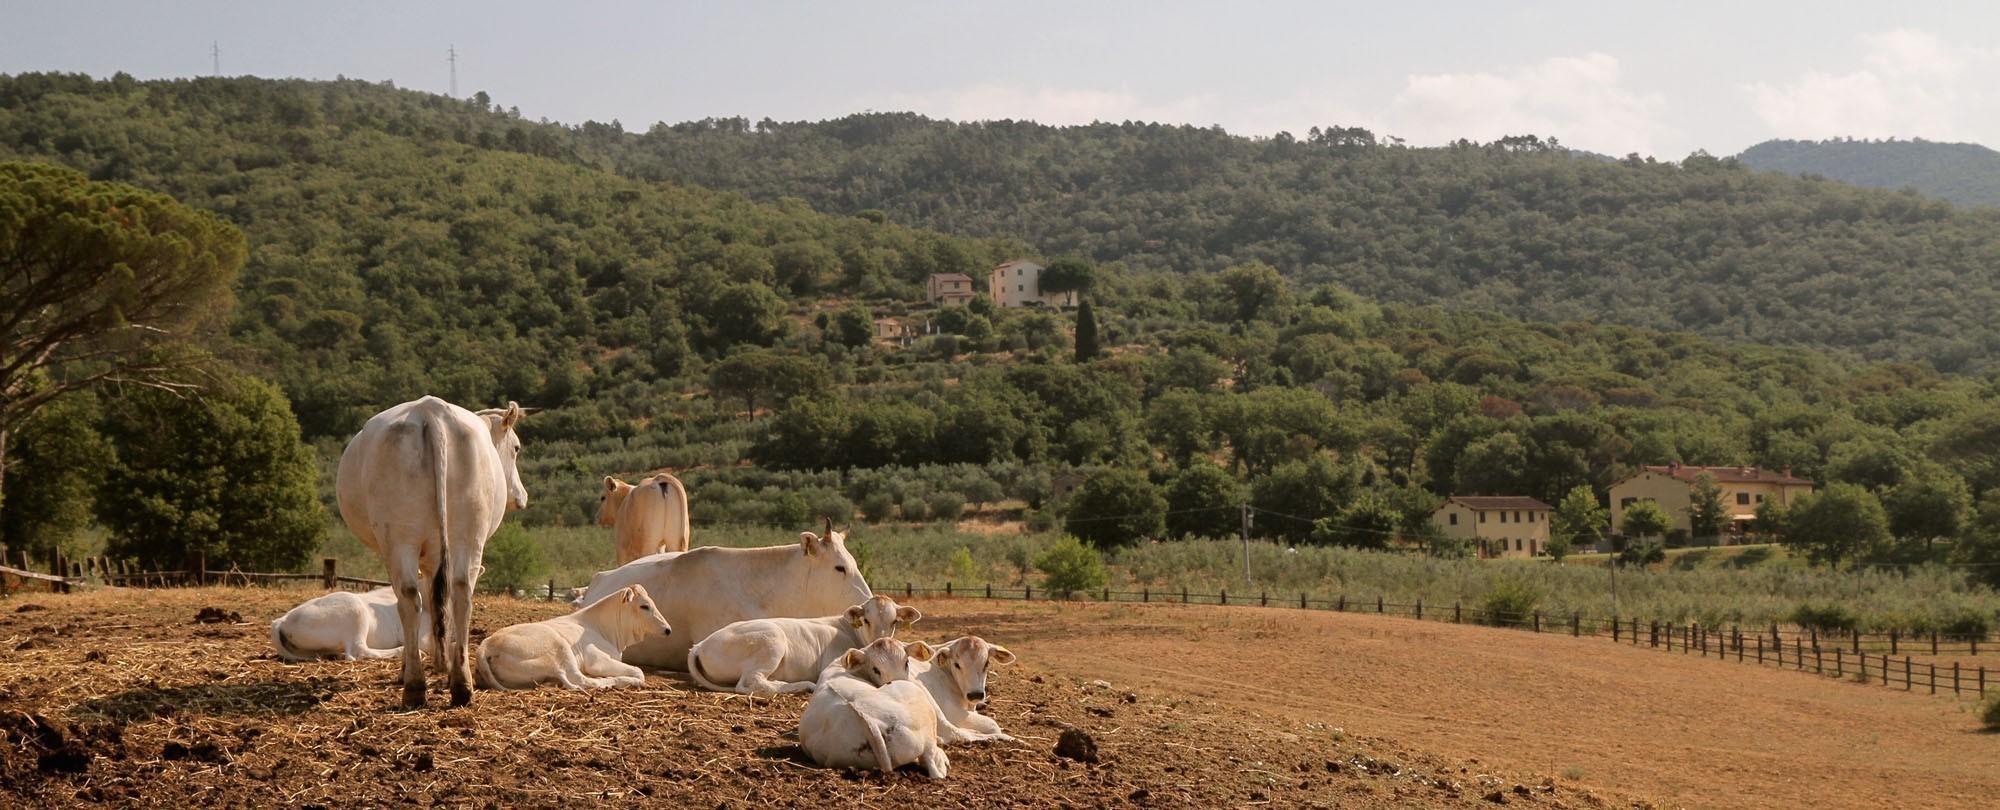 Μια εμπειρία στο αγρόκτημα-παράδεισο στο πιο όμορφο μεσαιωνικό χωριό της Τοσκάνης